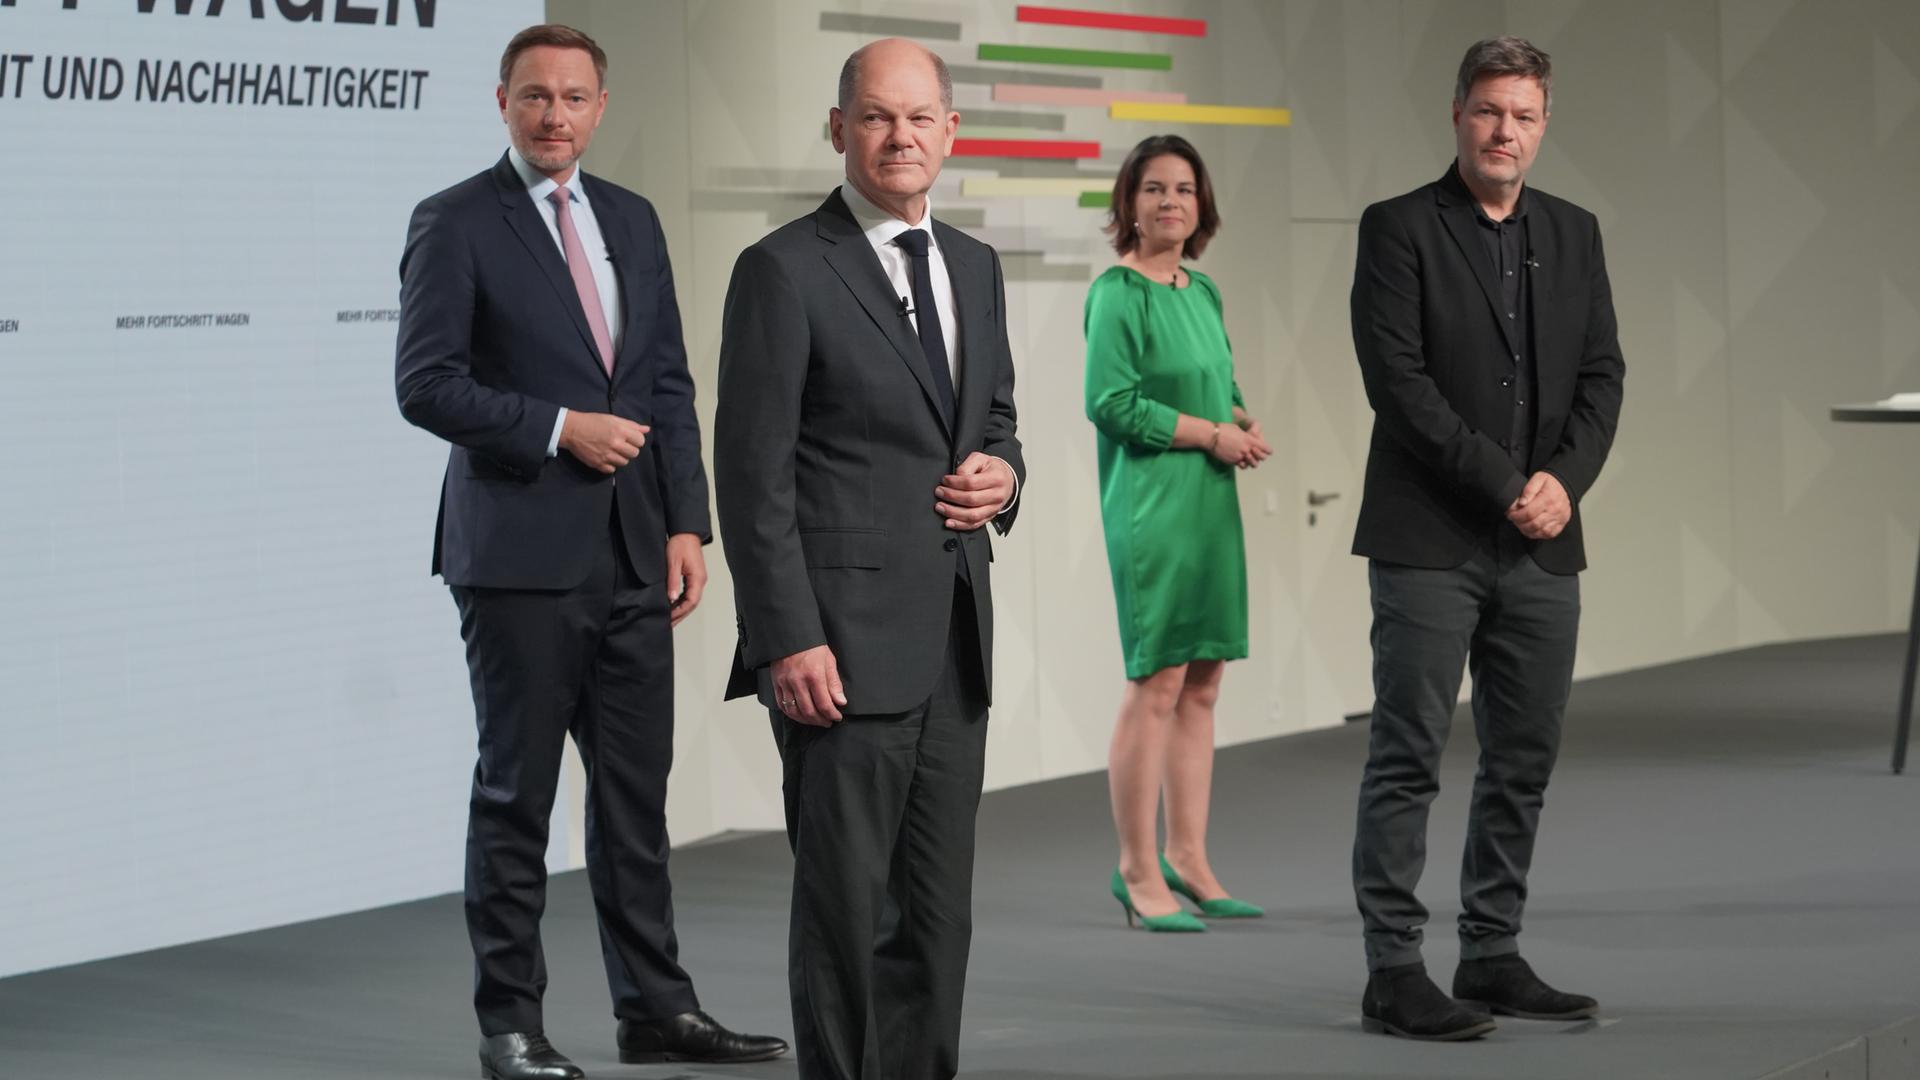 V.l.n.r.: Christian Lindner, Olaf Scholz, Annalena Baerbock und Robert Habeck, aufgenommen am Tag der Unterzeichnung des Koalitionsvertrags am 7.12.2021. 